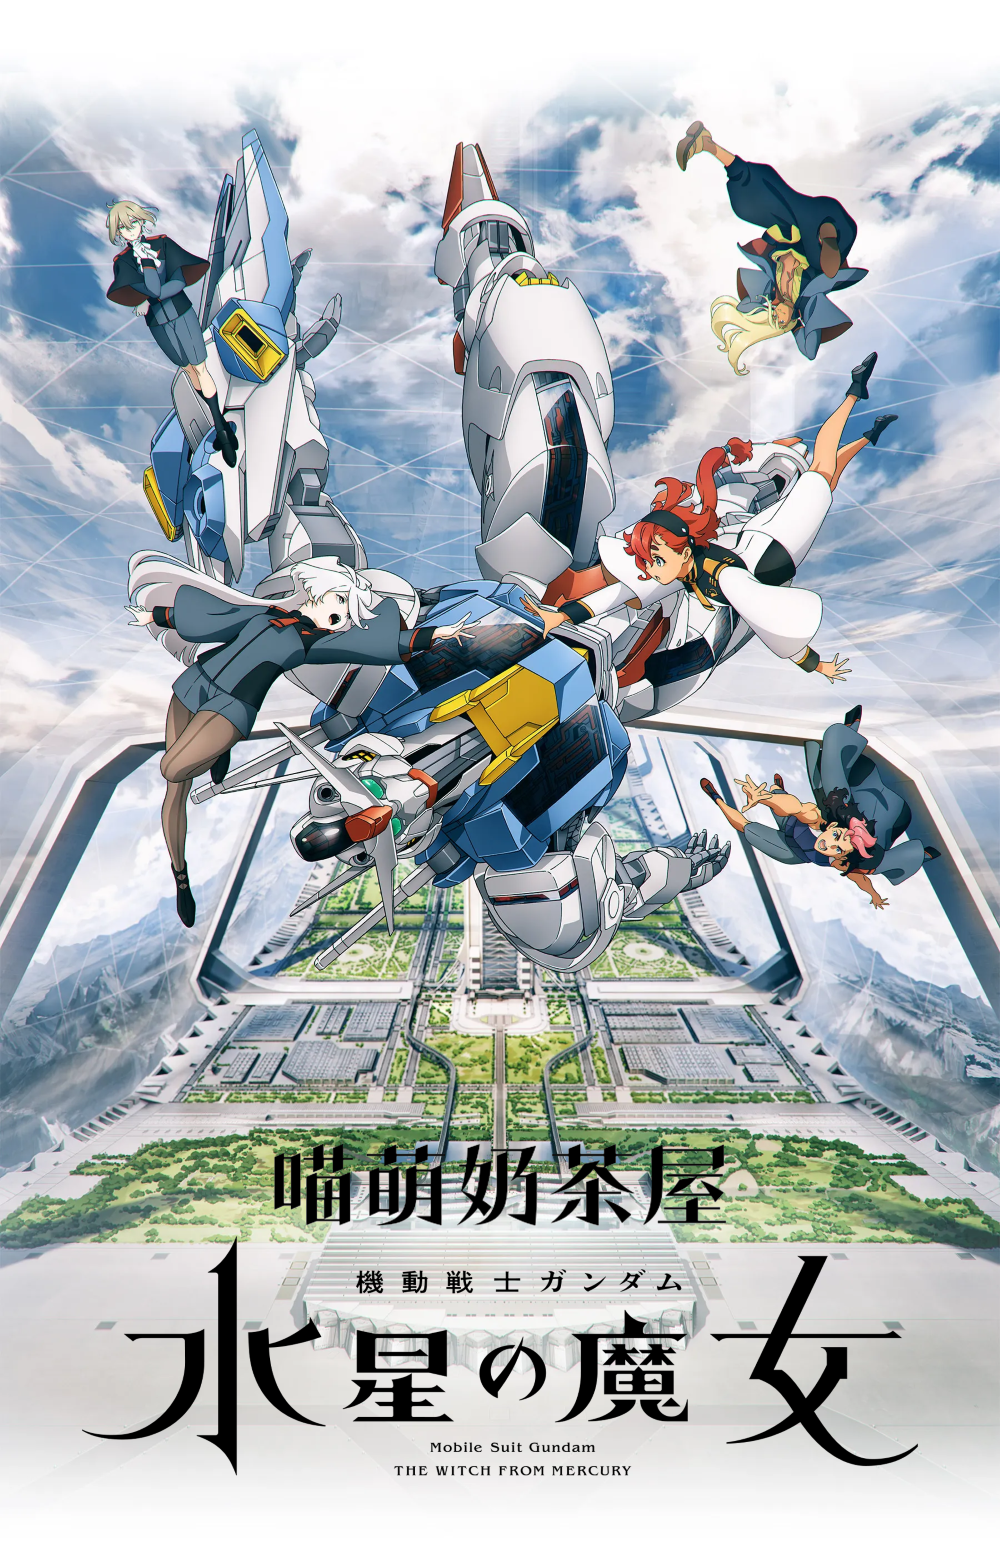 【喵萌奶茶屋】04月新番[機動戰士鋼彈 水星的魔女/Mobile Suit Gundam THE WITCH FROM MERCURY][14][720p][繁日雙語][招募翻譯]